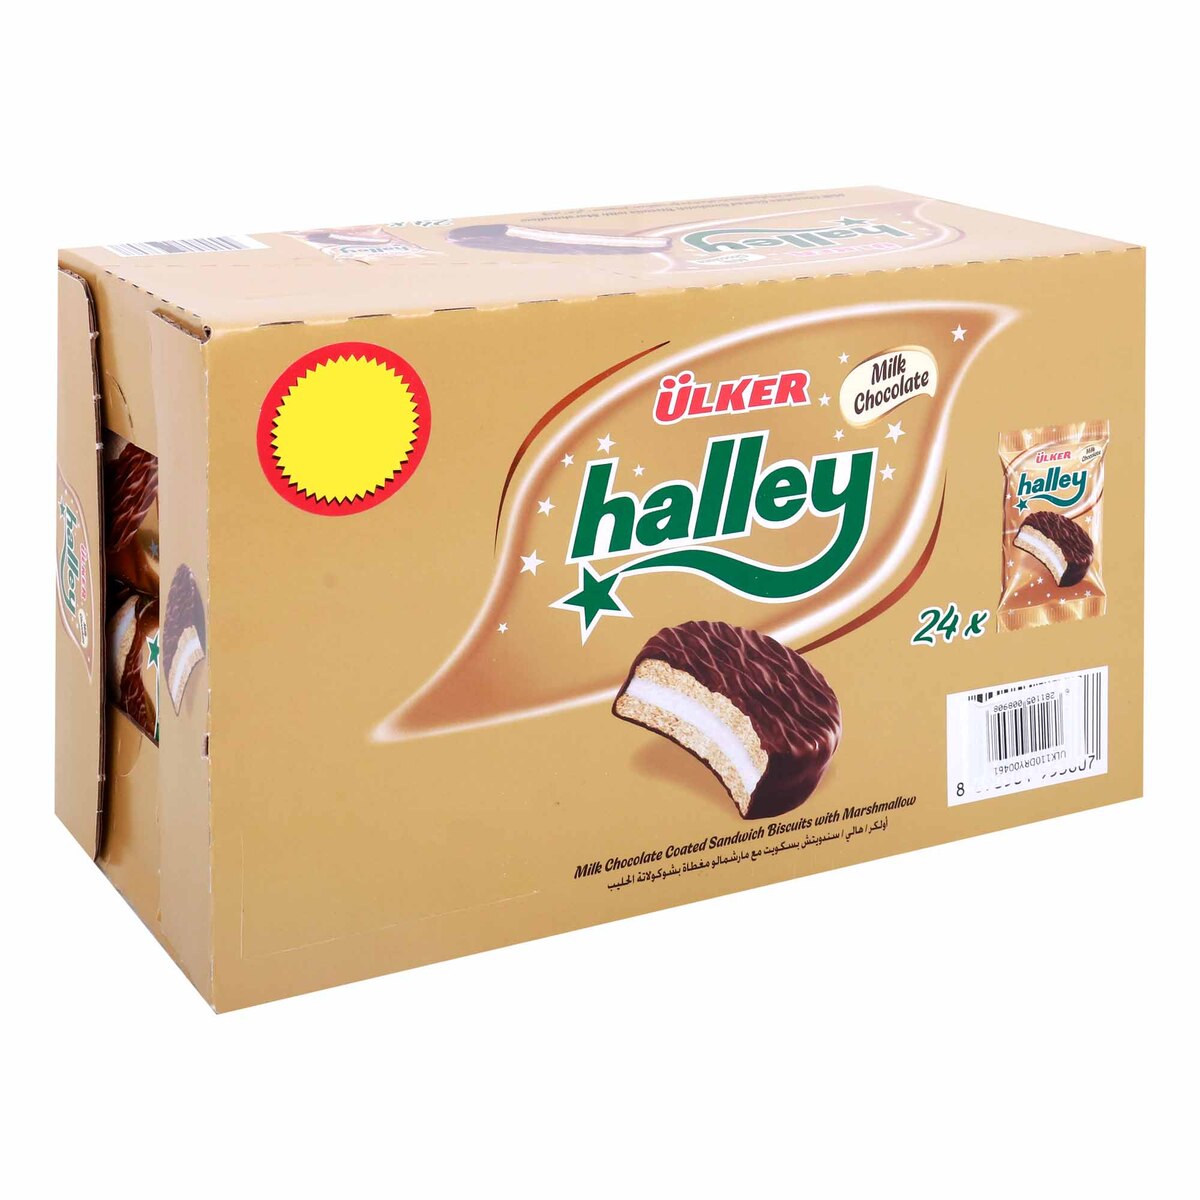 Ulker Halley Cake, 24 x 30 g